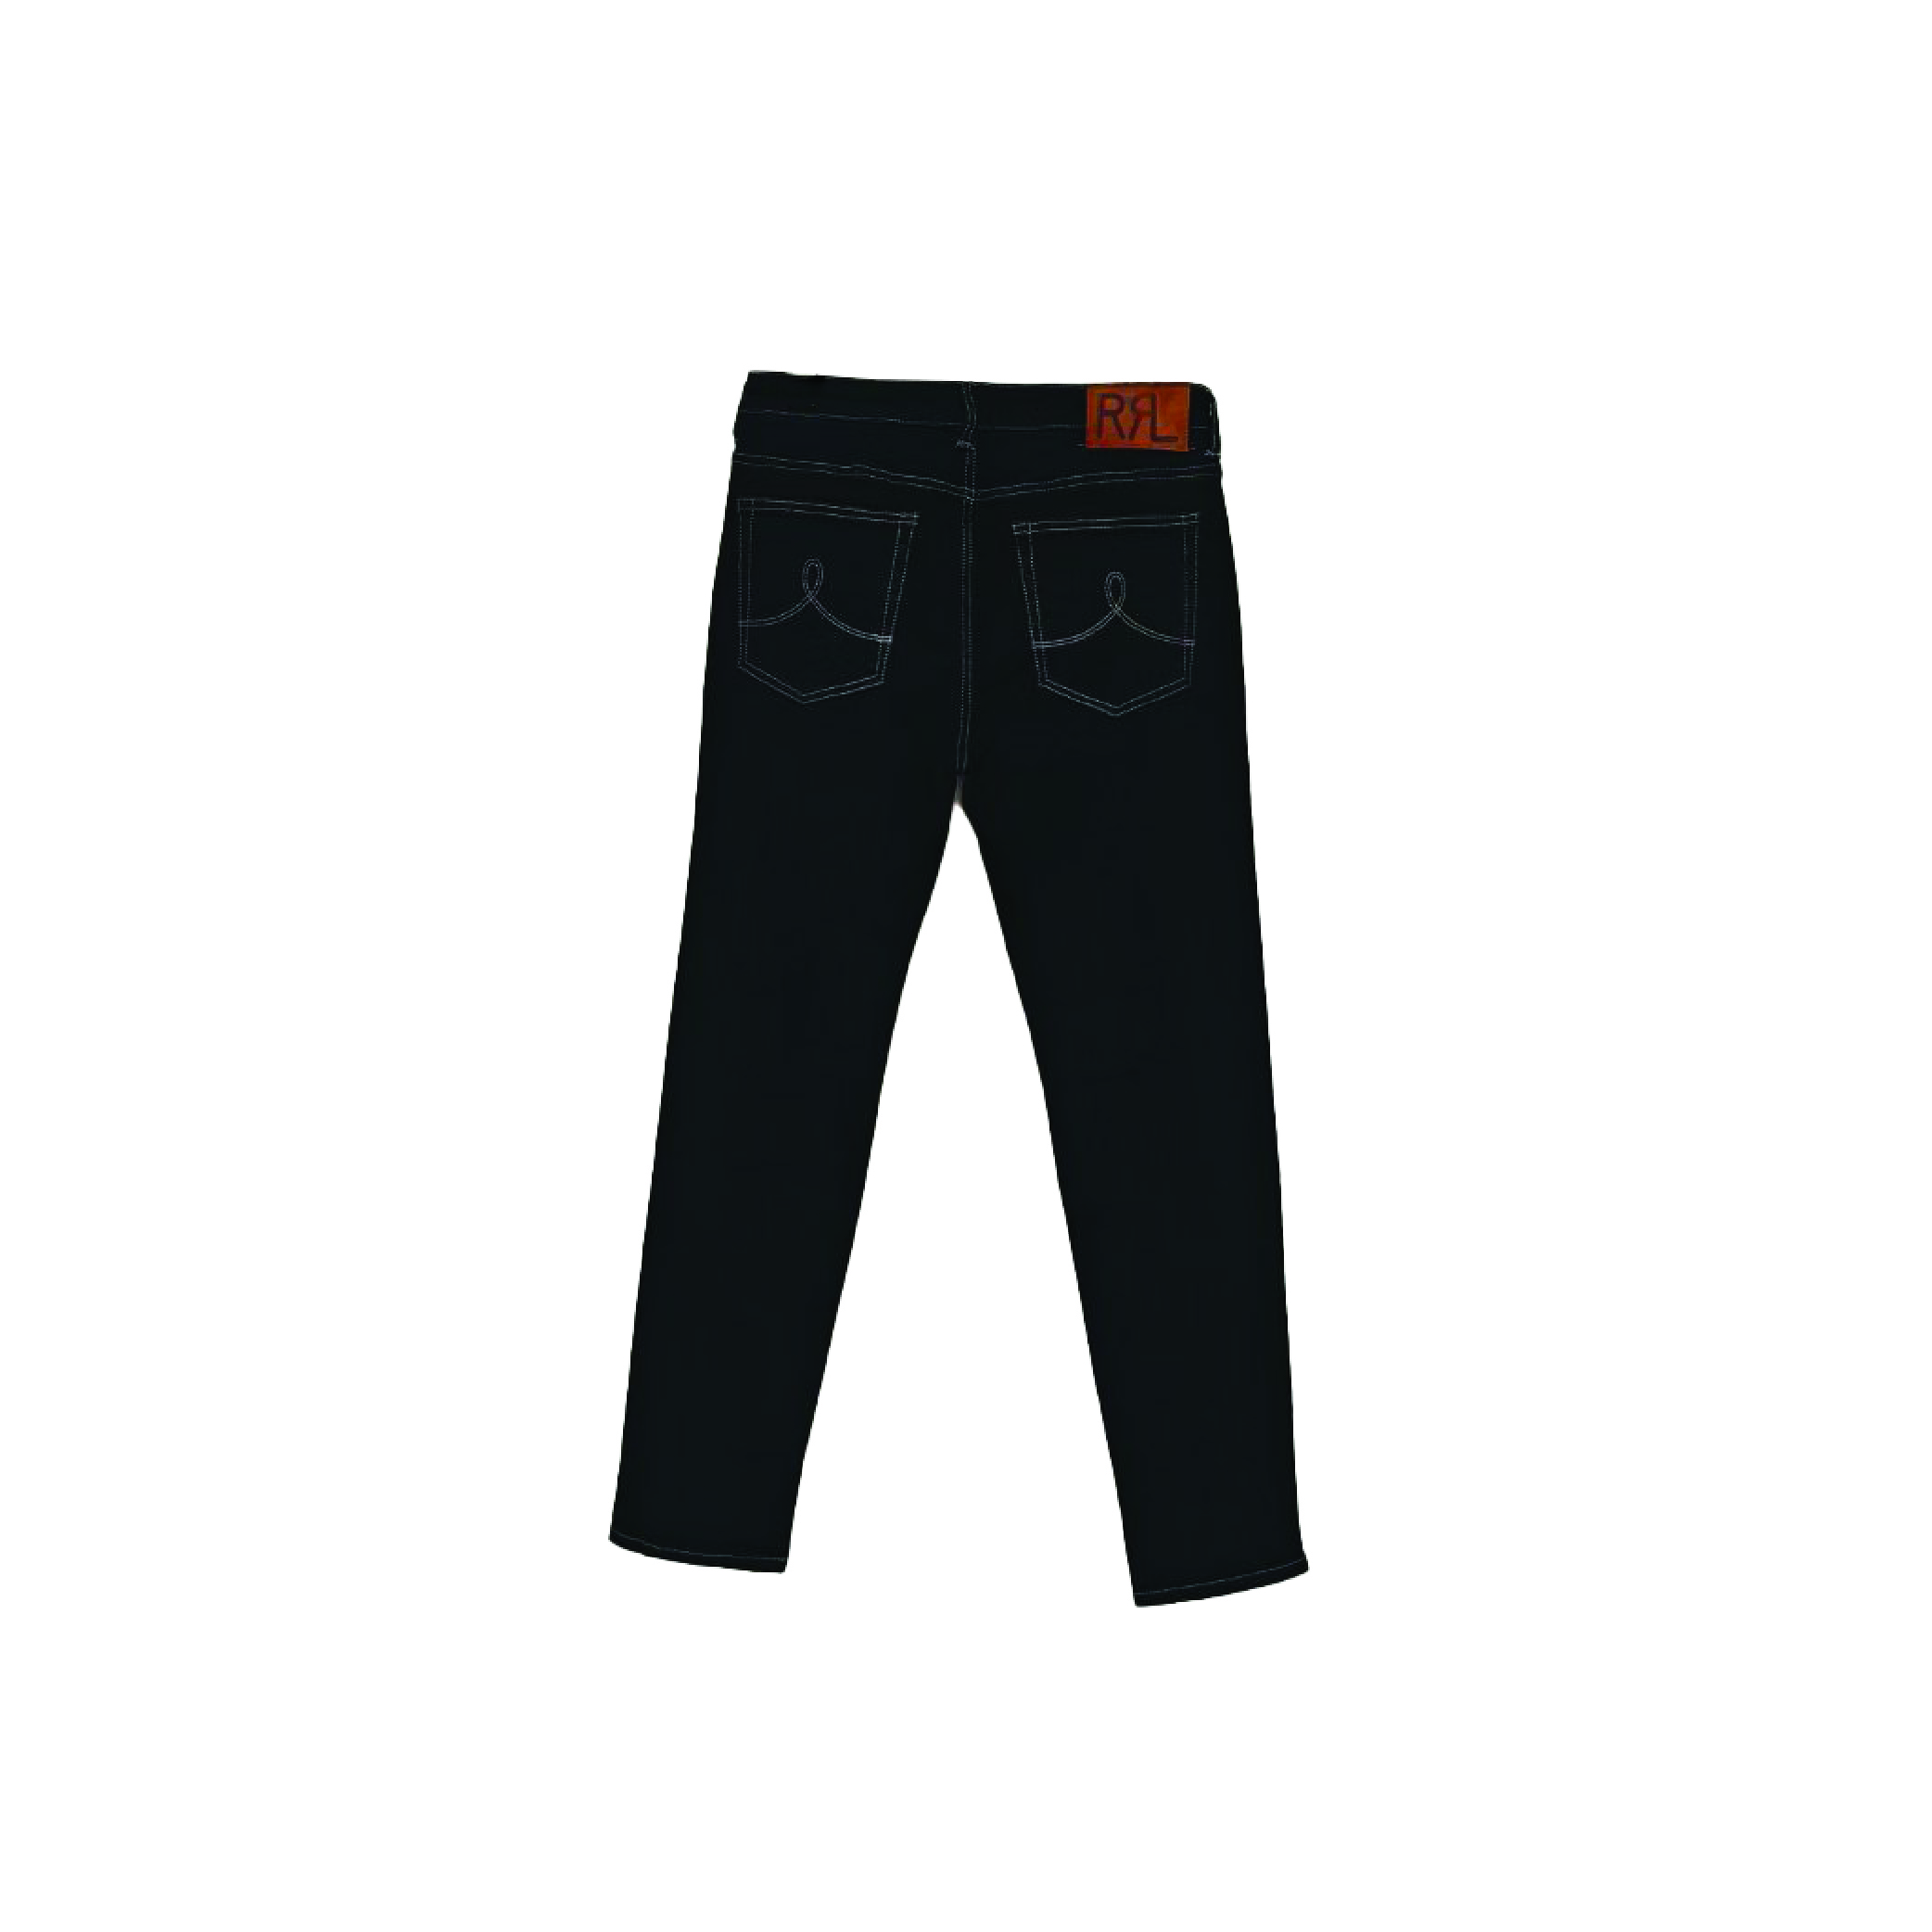 Raph Lauran Jeans2-02